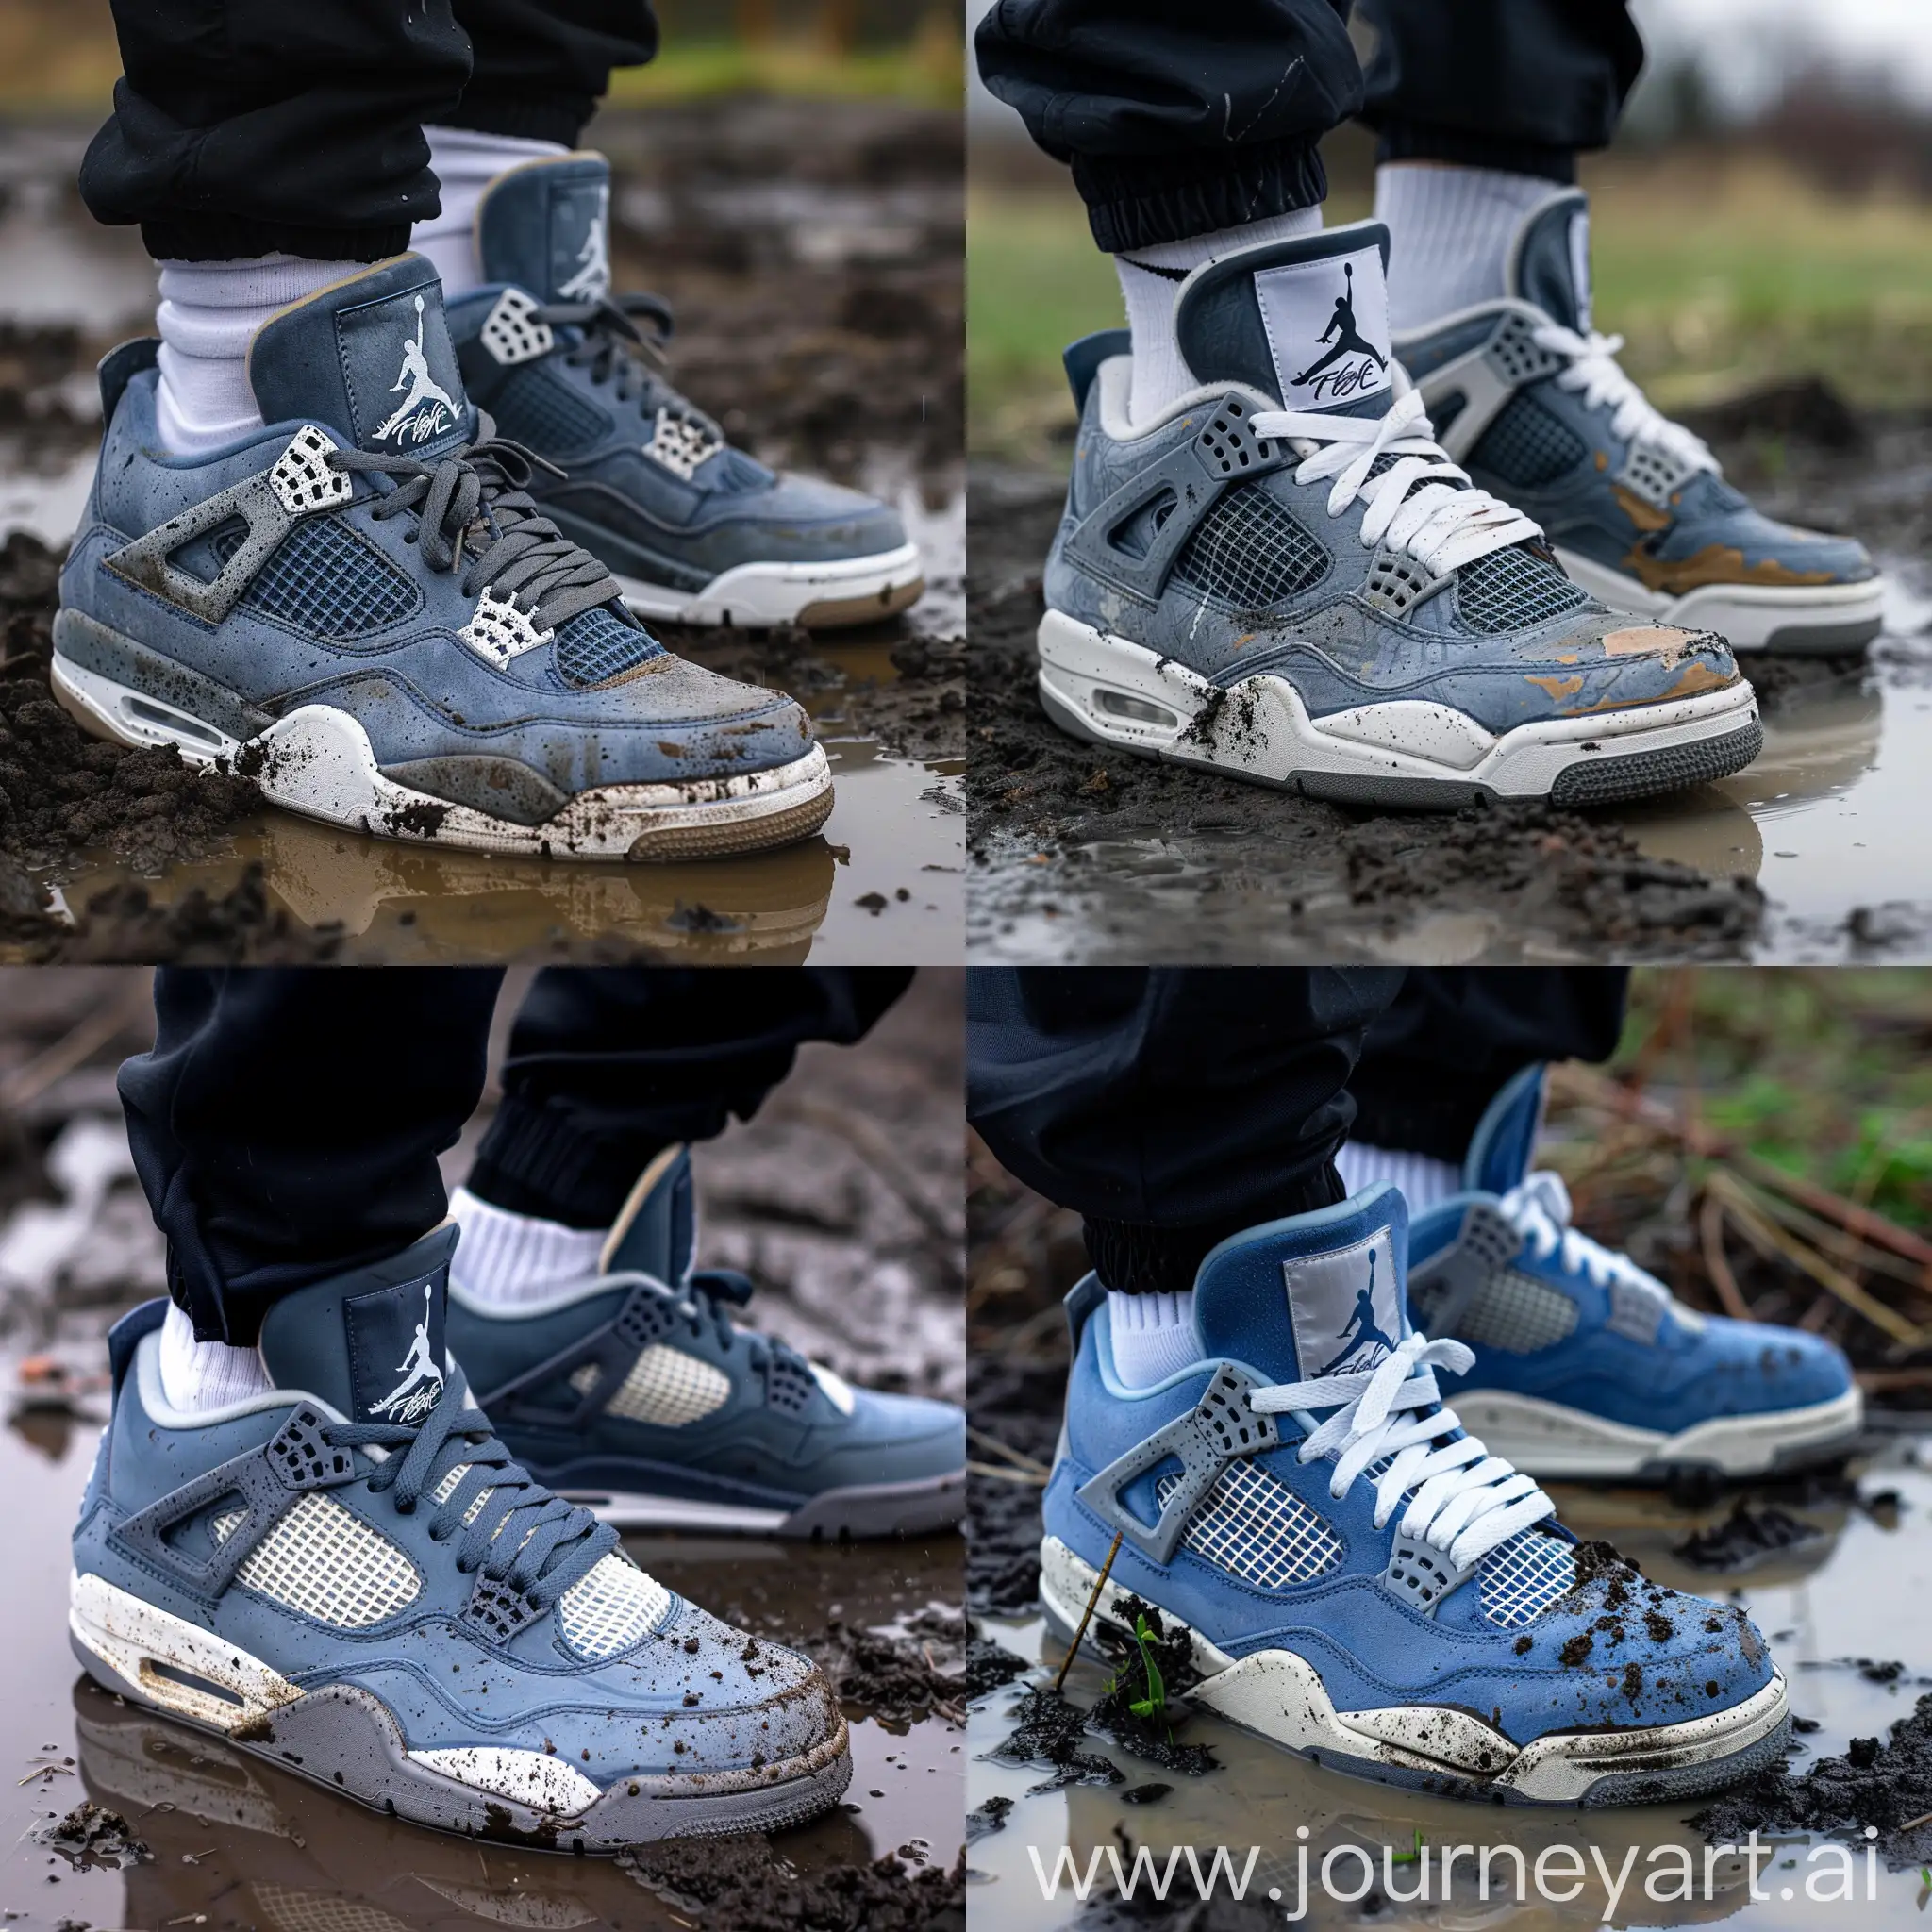 Jordan 4 в сине-серой расцветки польность в грязи в луже грязи  владелец носит его на белых носках nike и одет в черных штанах